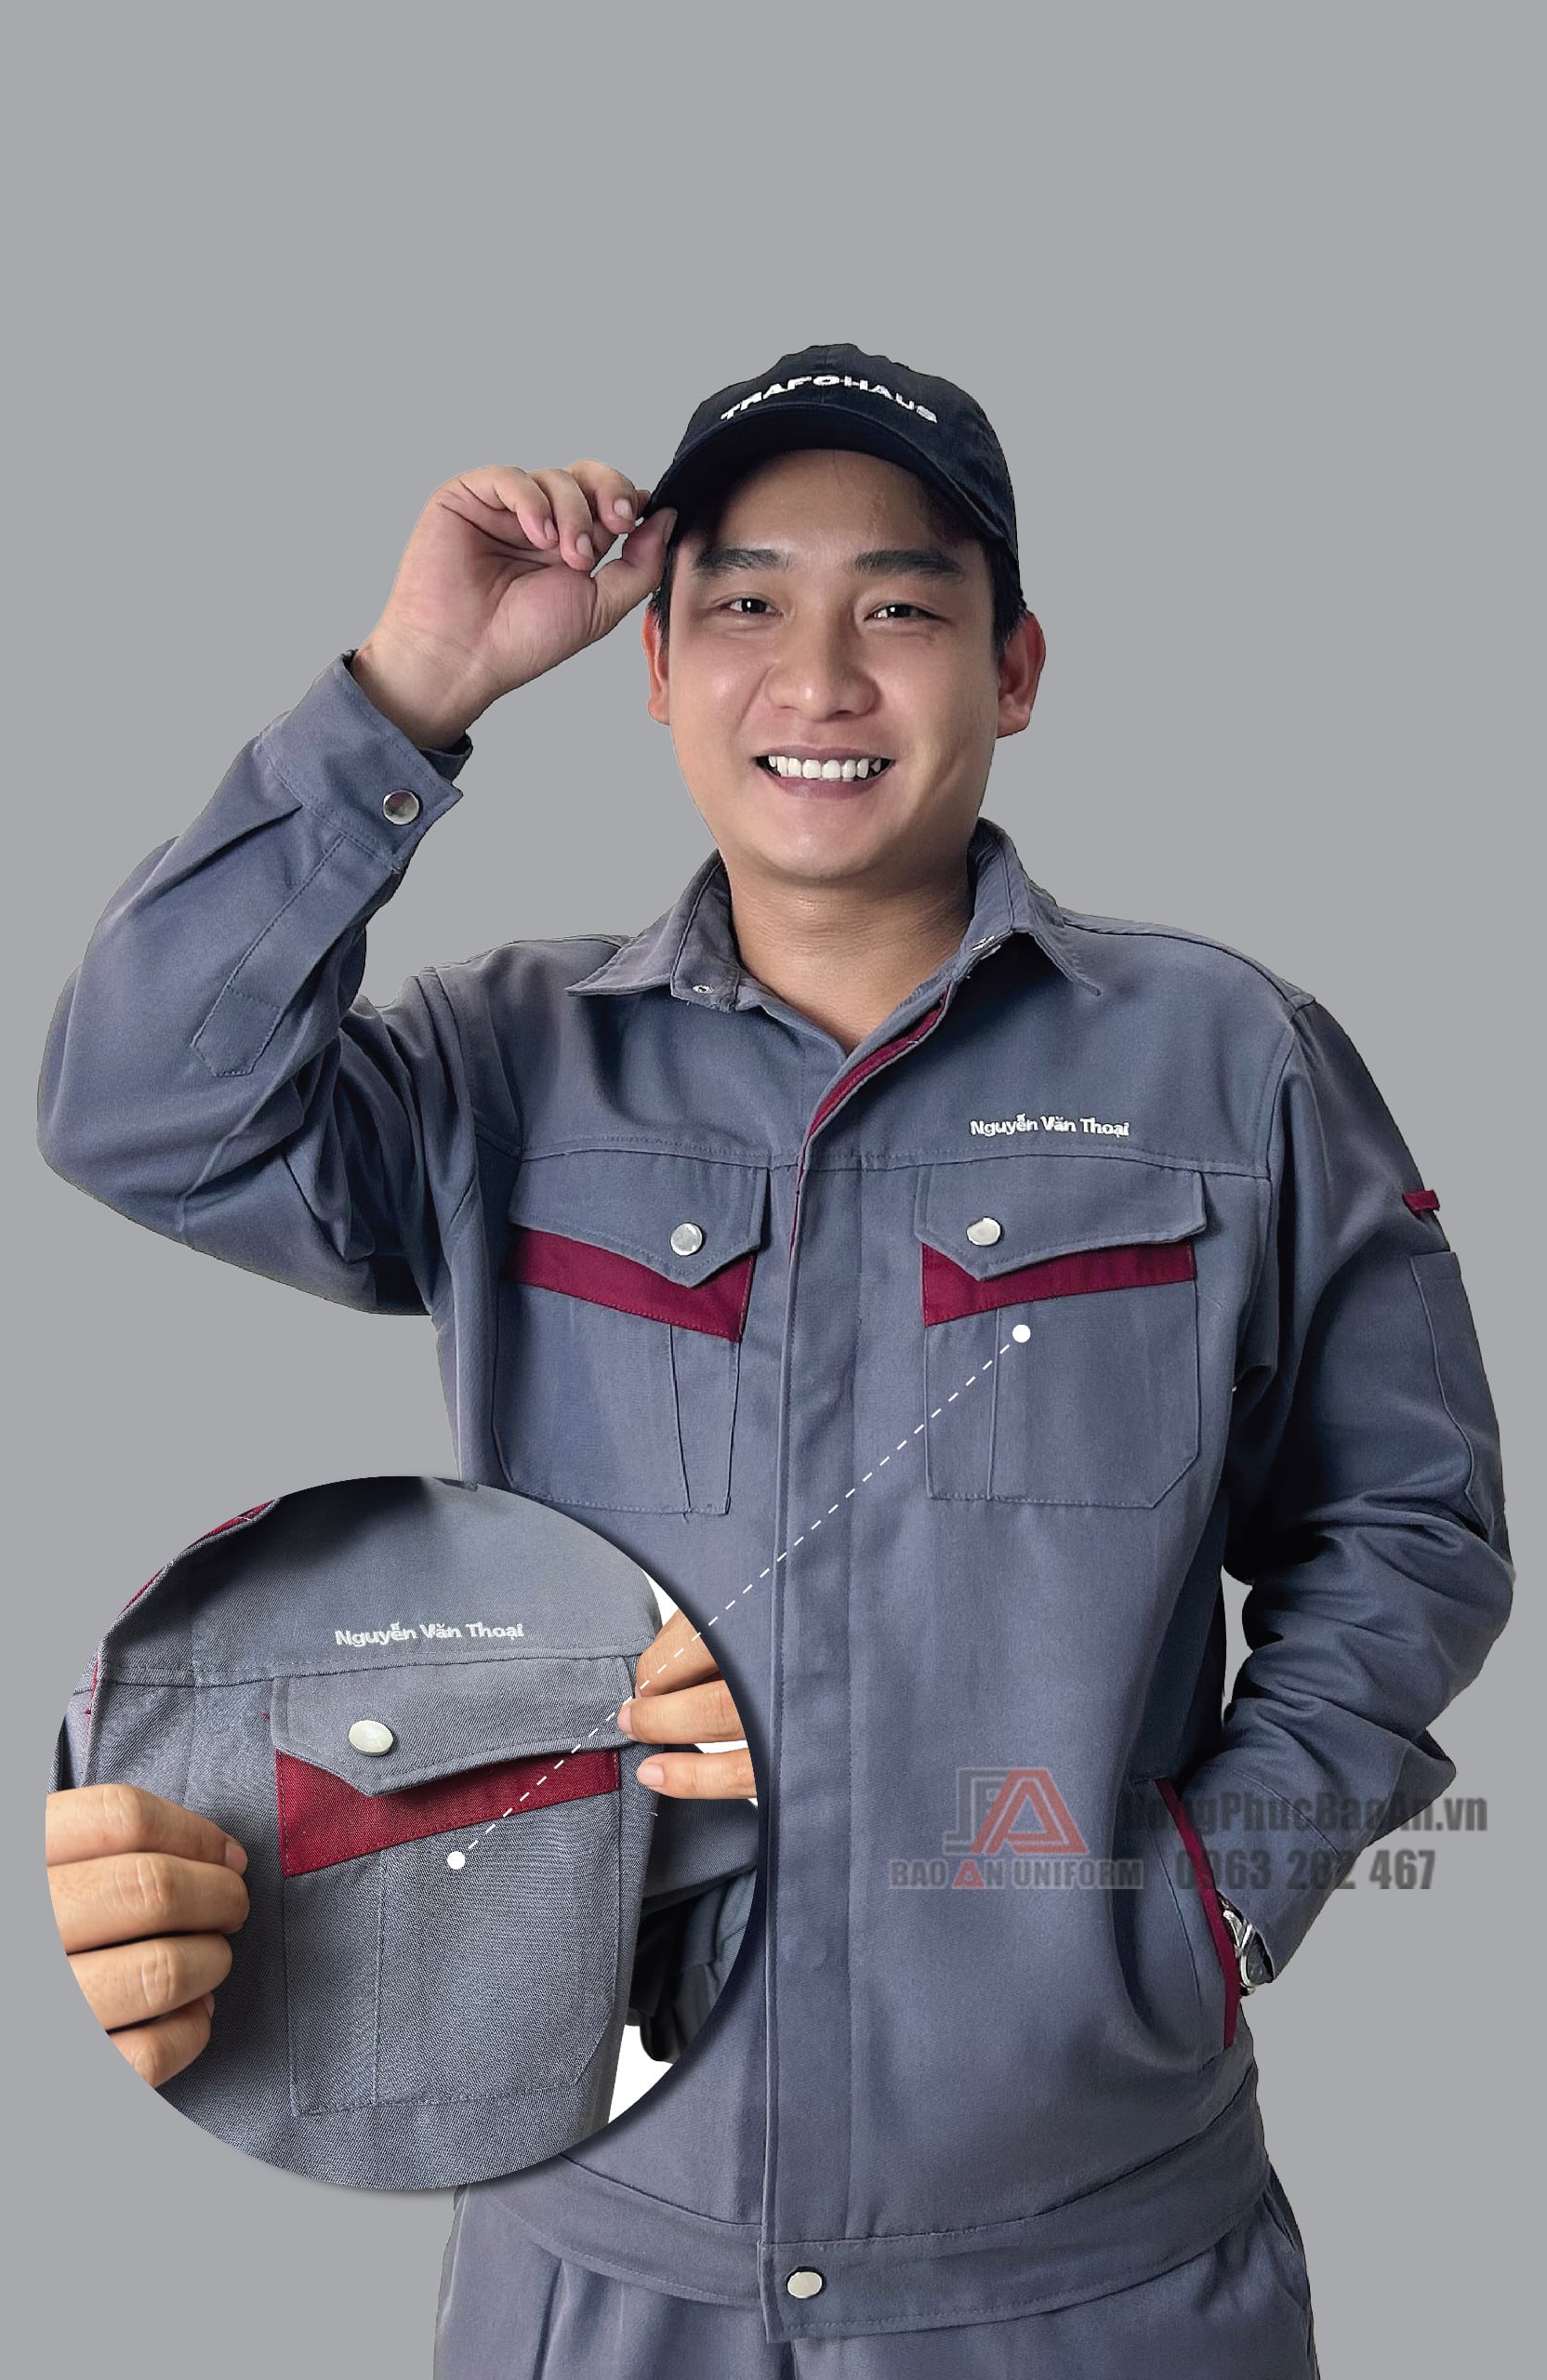 Thiết kế túi áo của đồng phục bảo hộ lao động